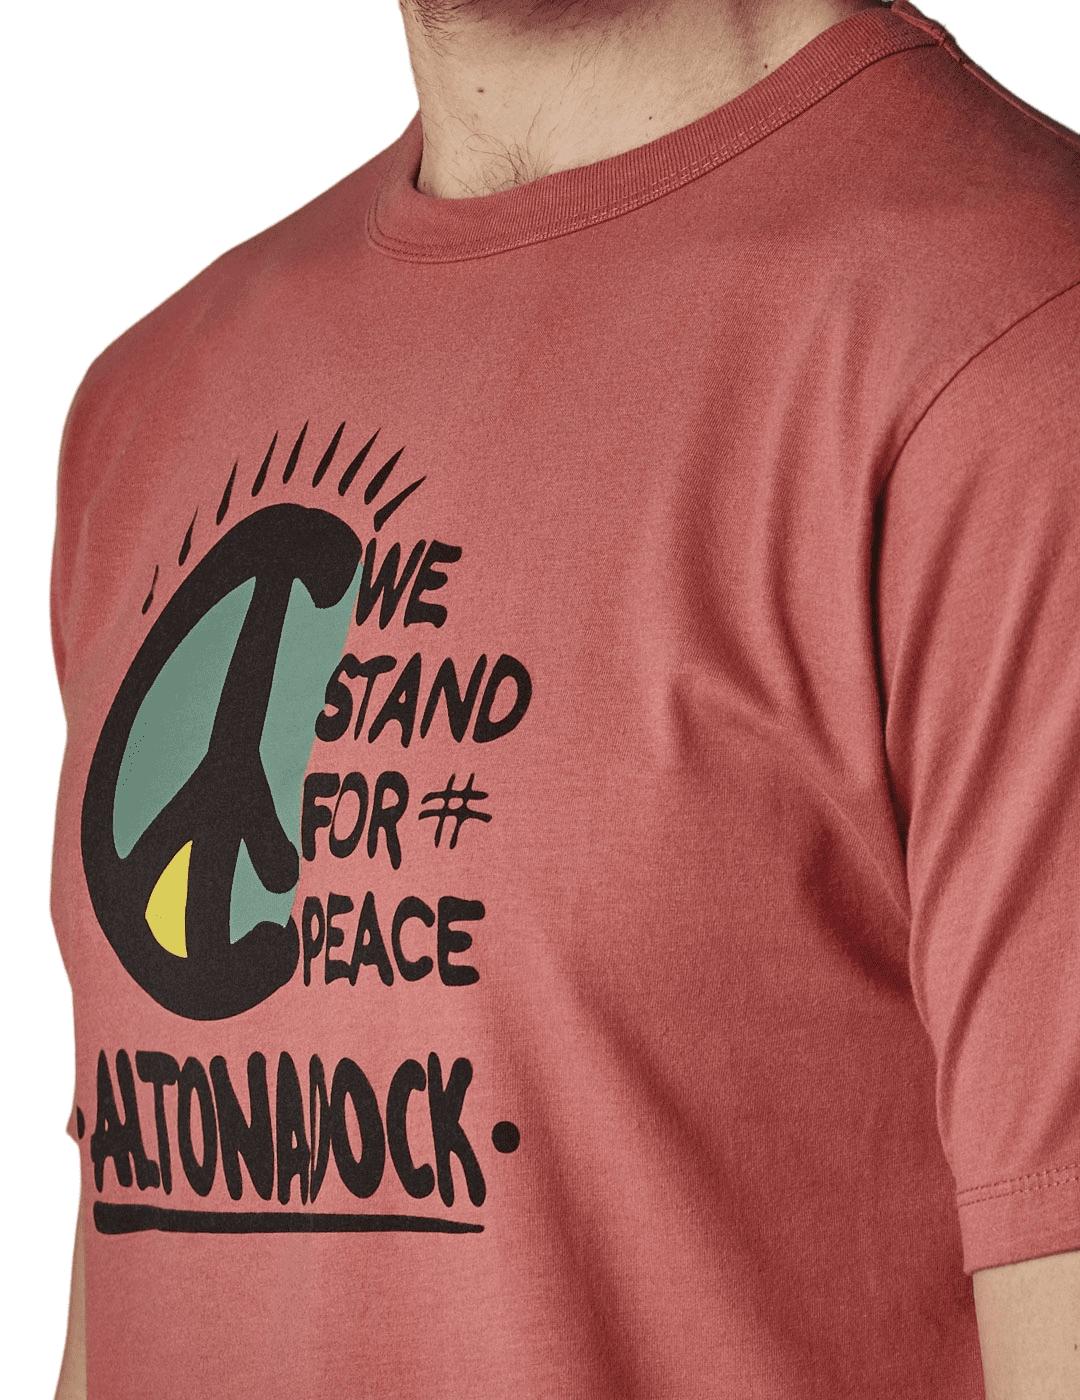 Camiseta Altona Dock coral de la paz